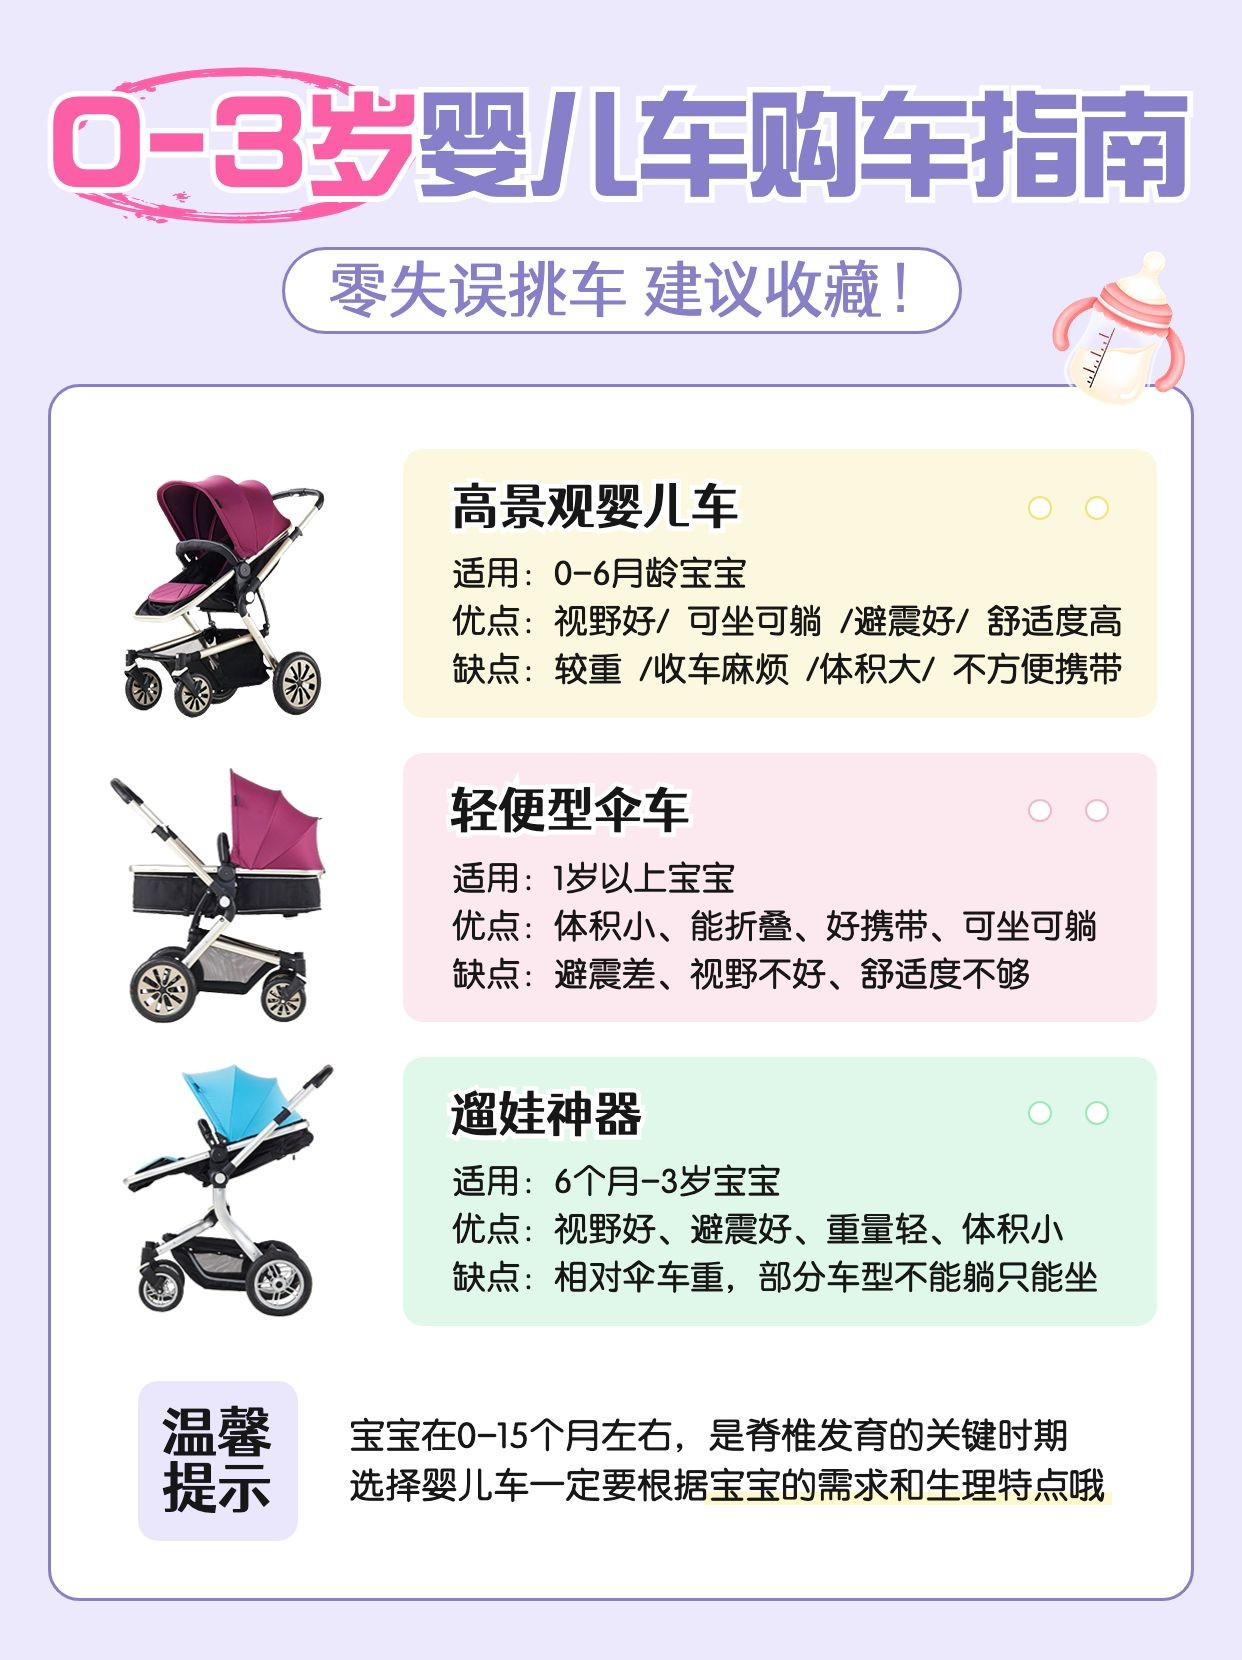 母婴亲子婴儿车产品测评科普小红书配图预览效果